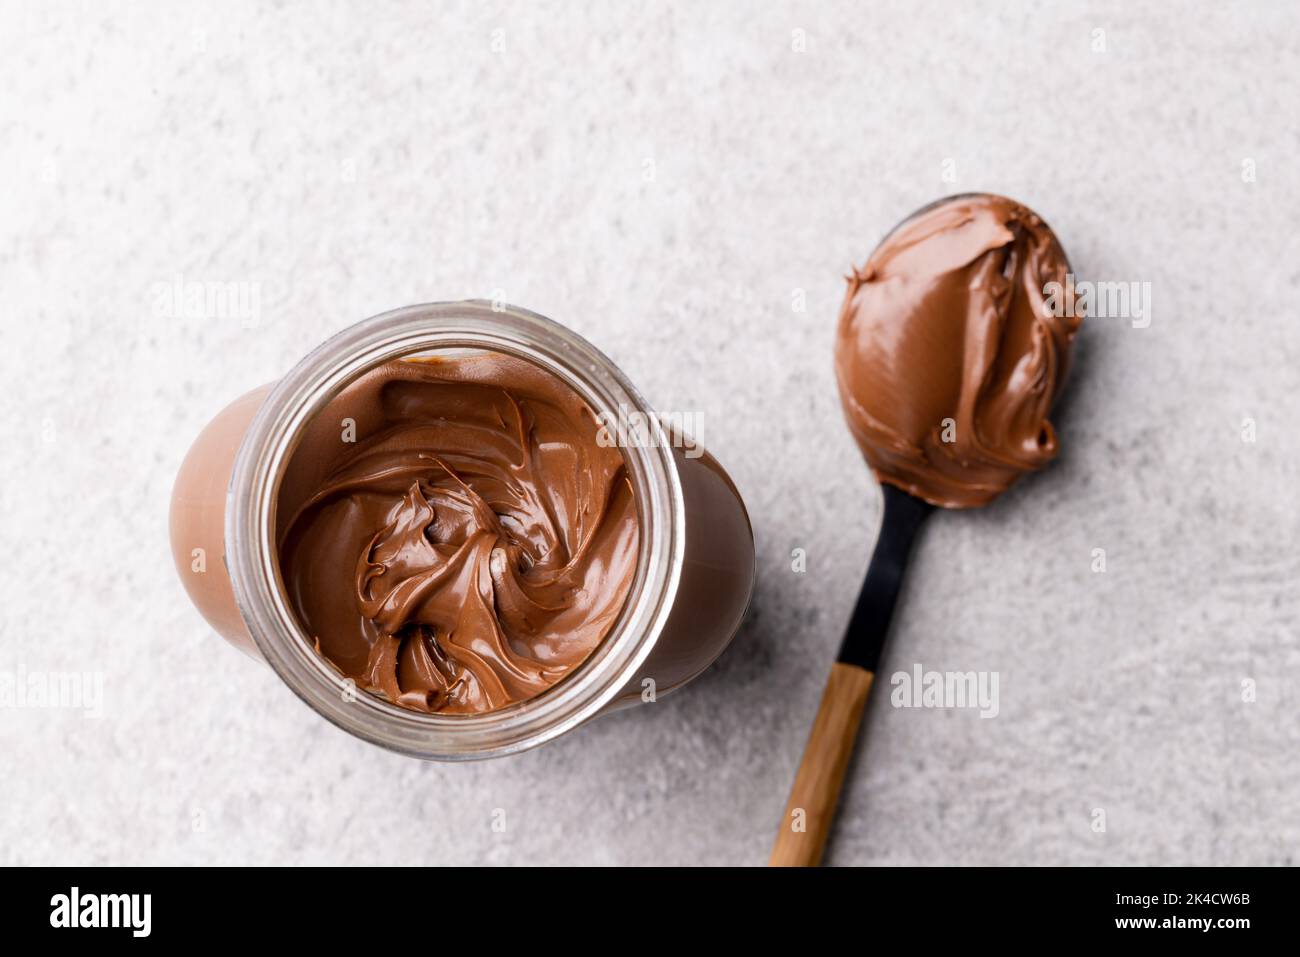 Bild von Löffel und Glas mit Schokoladencreme auf hellgrauem Hintergrund Stockfoto